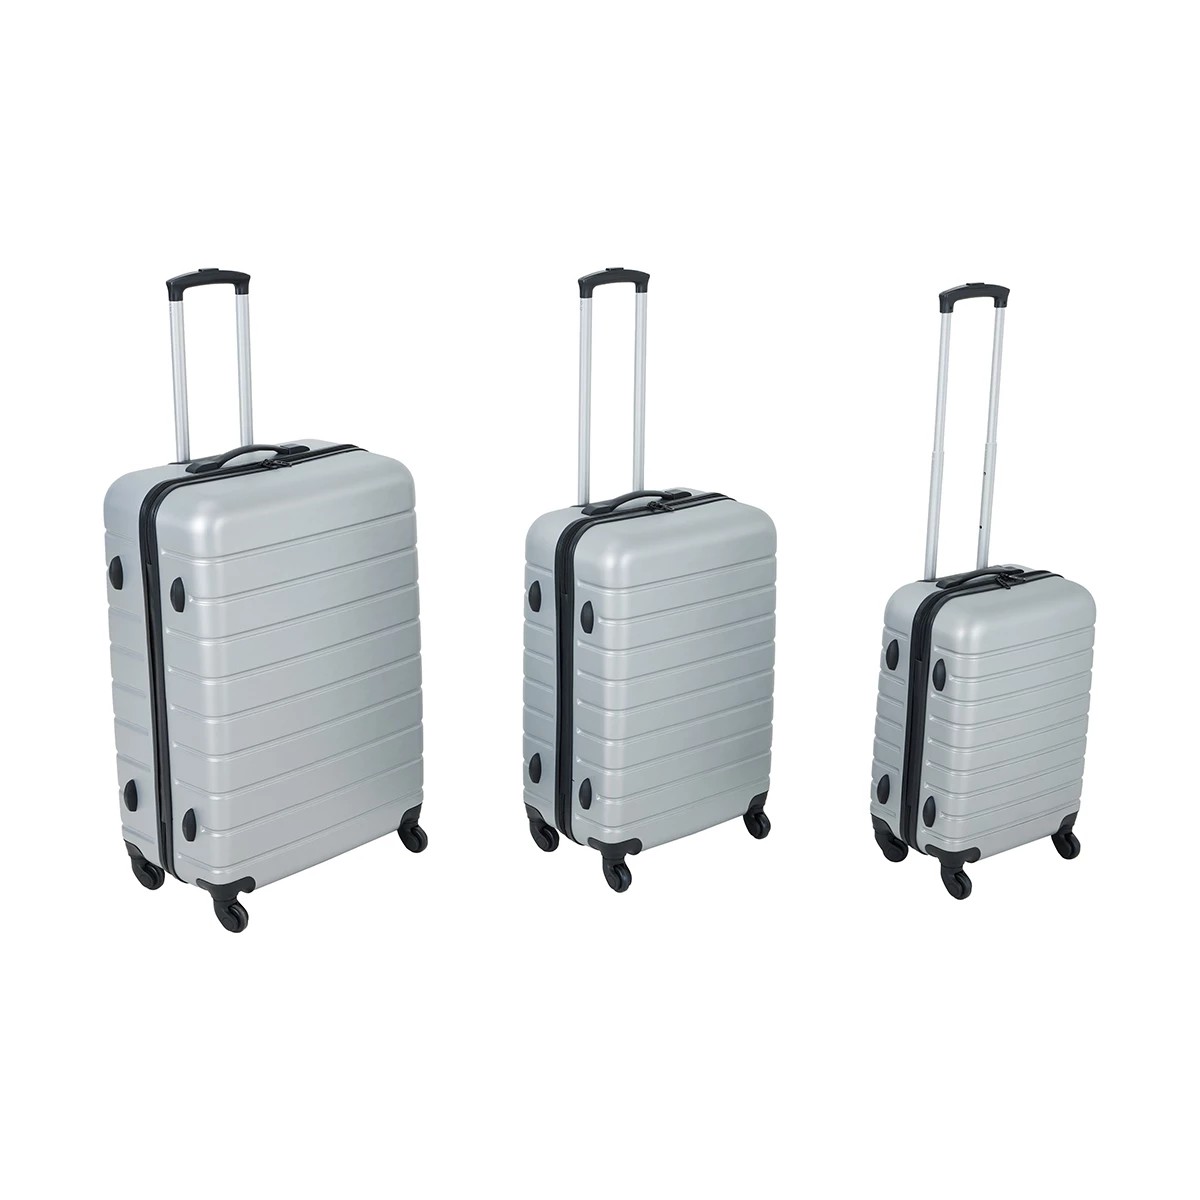 Family Luggage 6 Piece Set - Anko | Target Australia